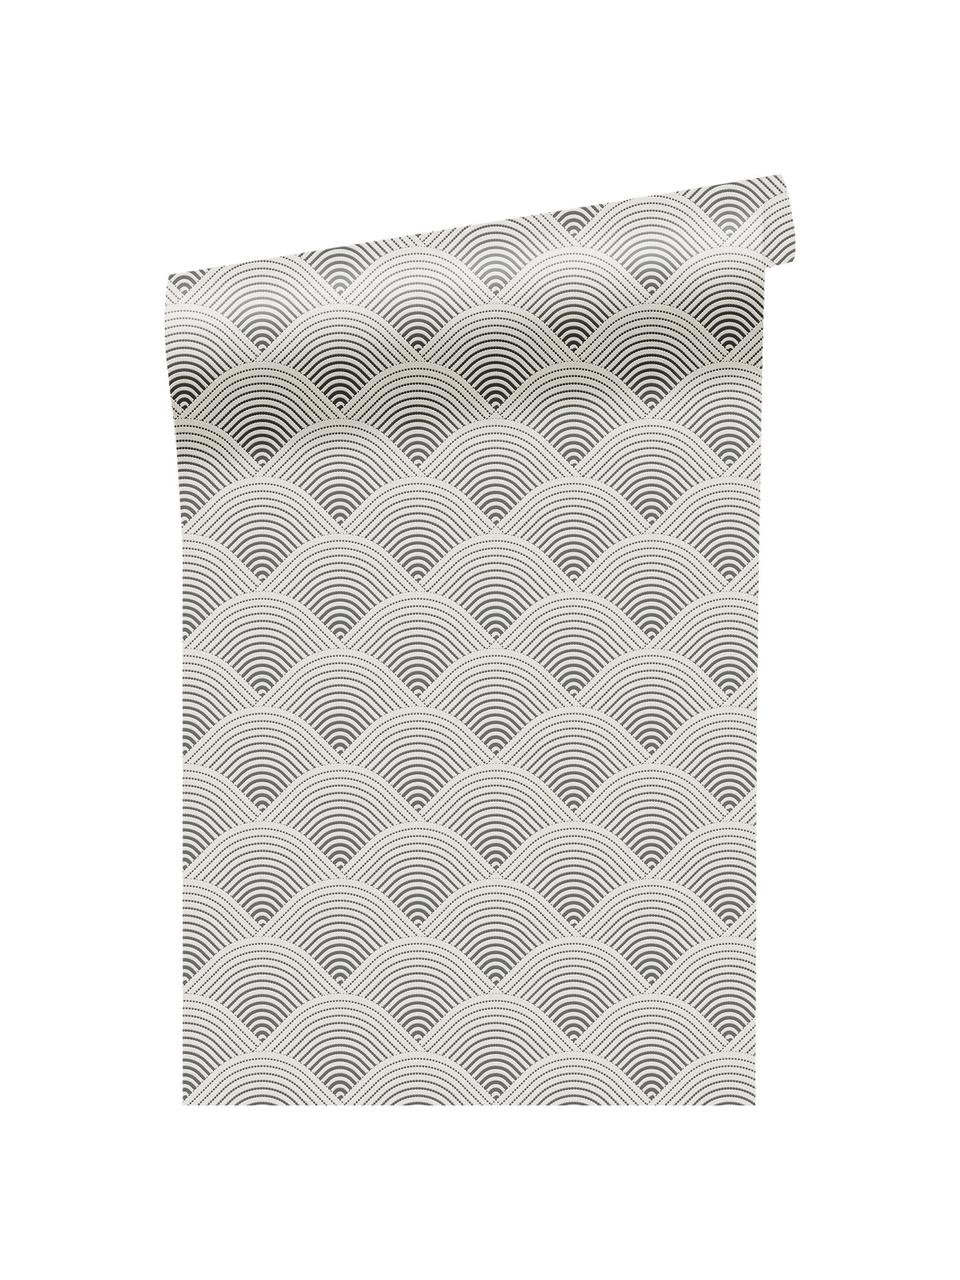 Tapeta Luxus 3D Geometric Art, Włóknina, Odcienie srebrnego, szary, S 52 x W 1005 cm